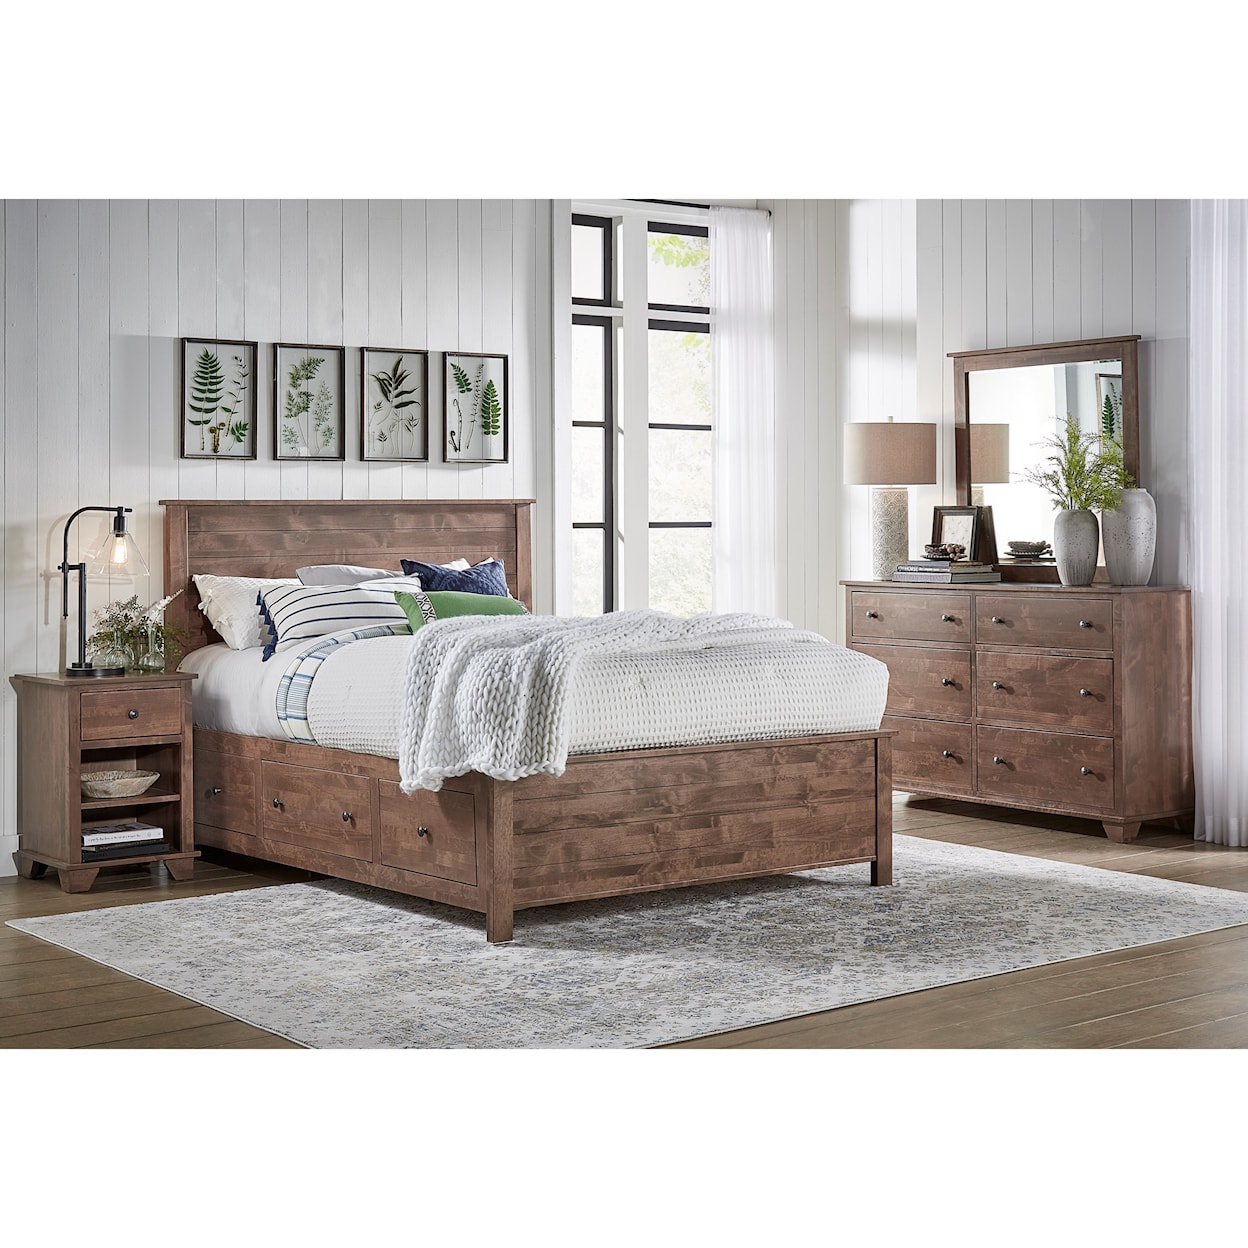 Archbold Furniture Portland Storage Bedroom Group